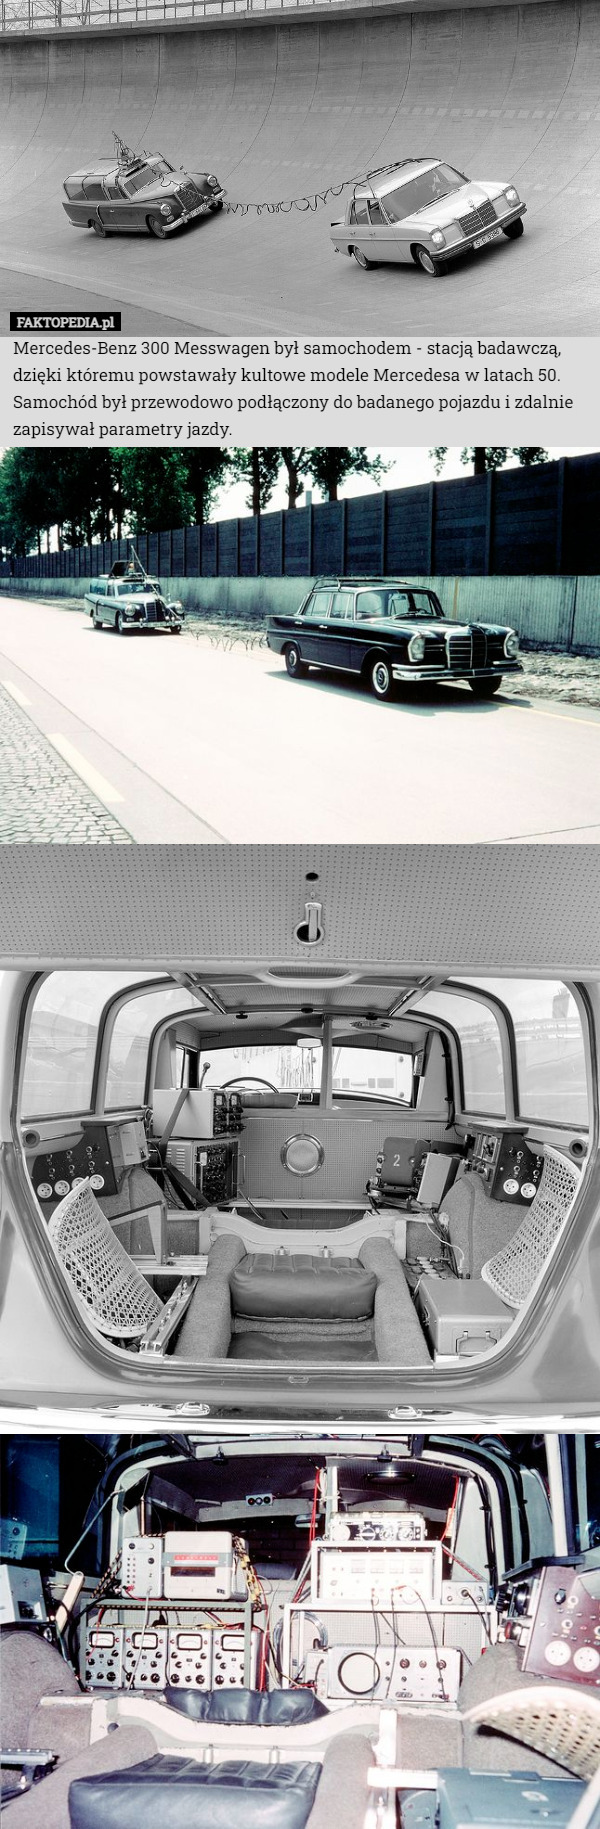 Mercedes-Benz 300 Messwagen był samochodem - stacją badawczą, dzięki któremu powstawały kultowe modele Mercedesa w latach 50.
Samochód był przewodowo podłączony do badanego pojazdu i zdalnie zapisywał parametry jazdy. 